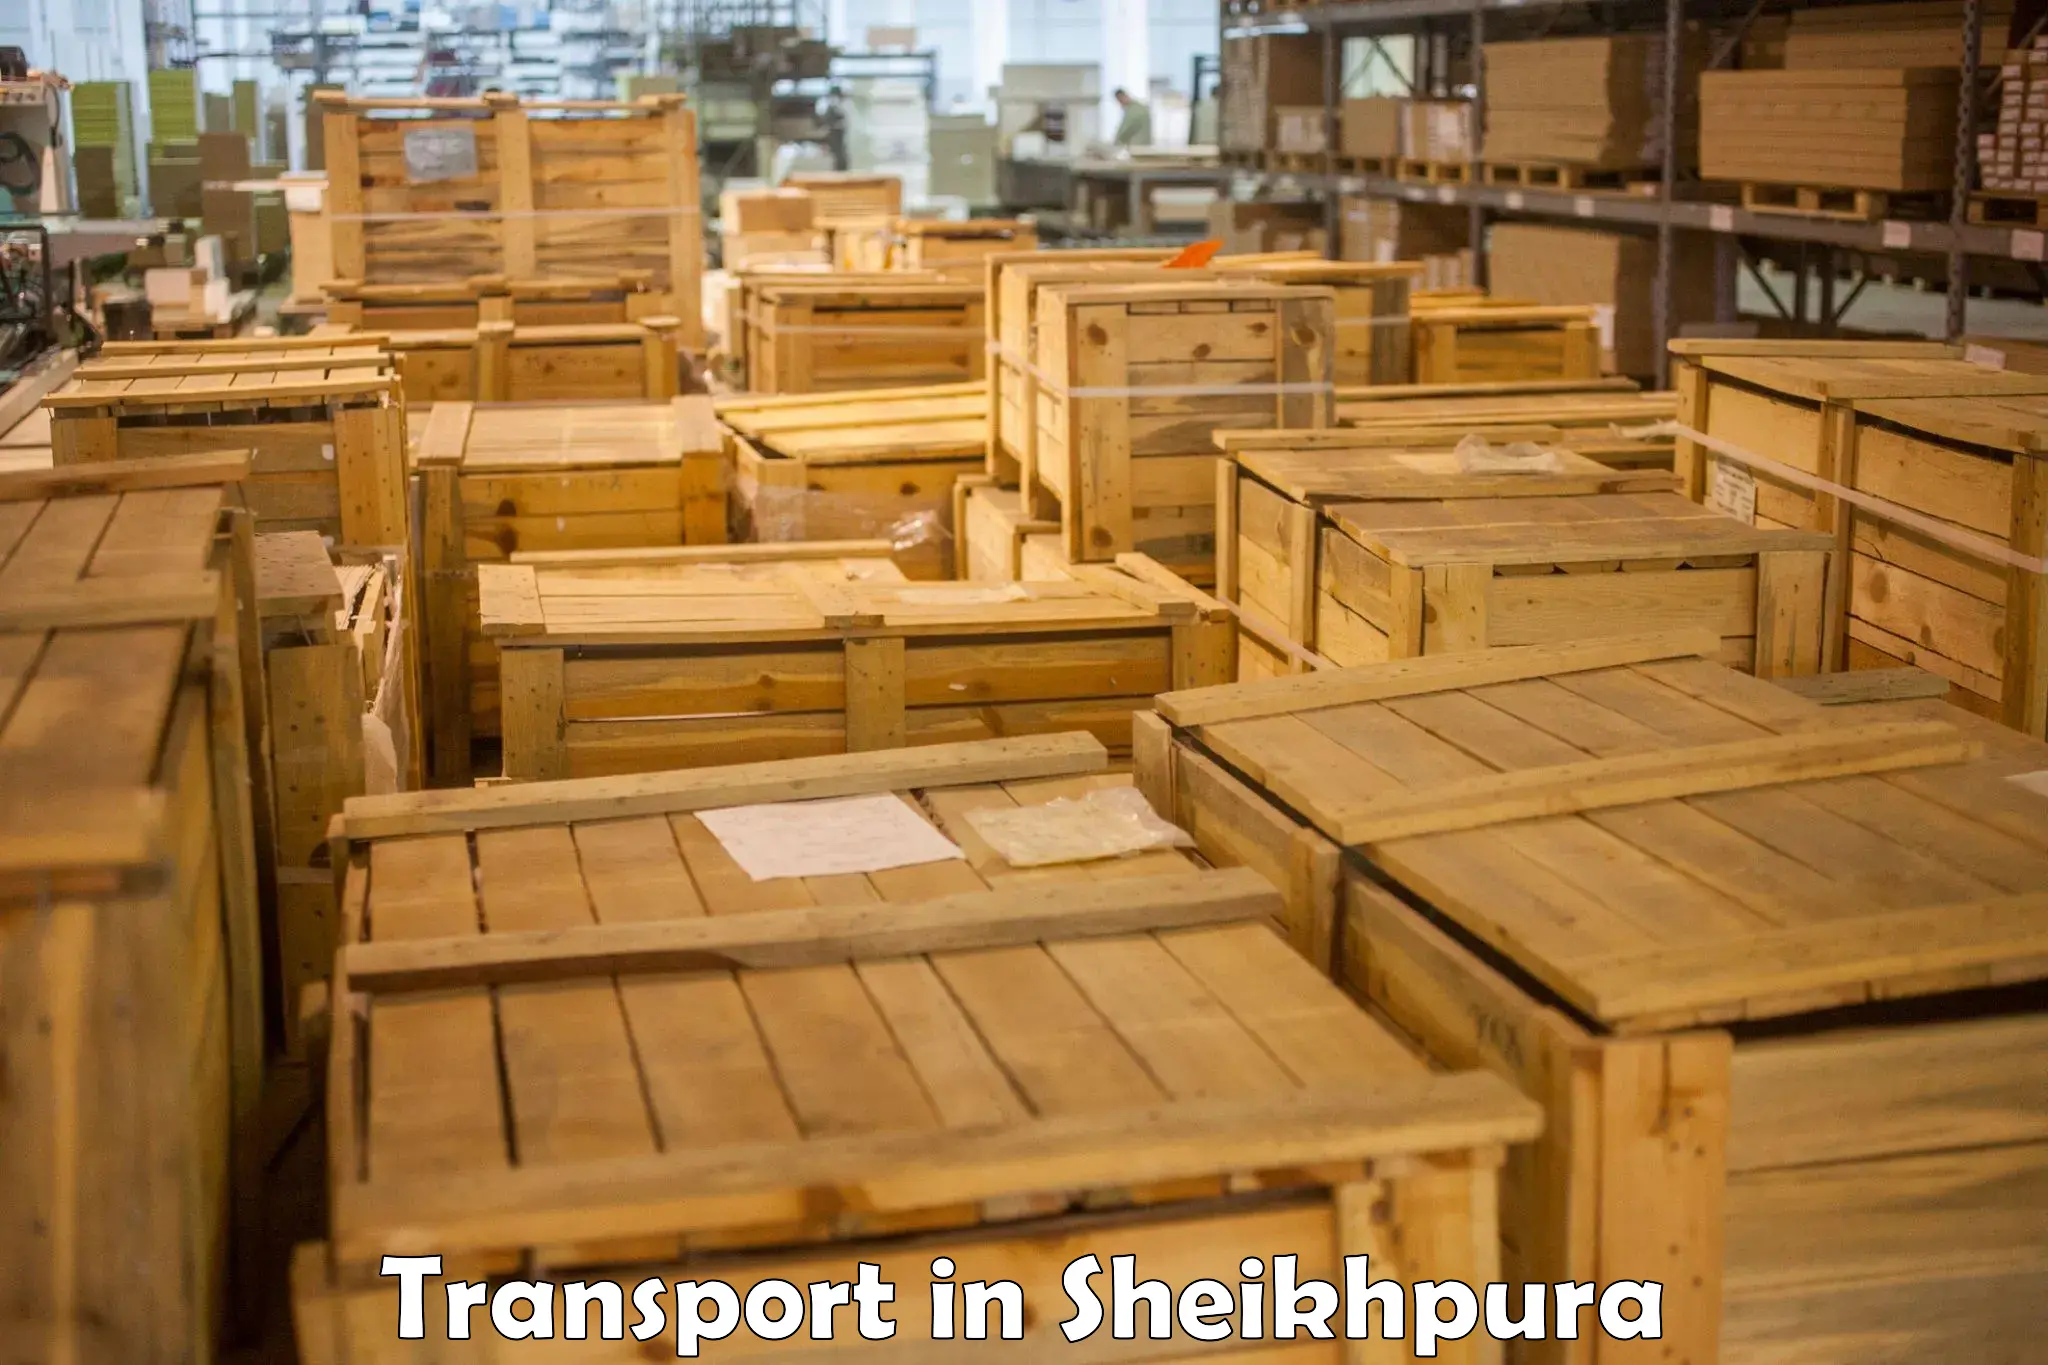 Parcel transport services in Sheikhpura